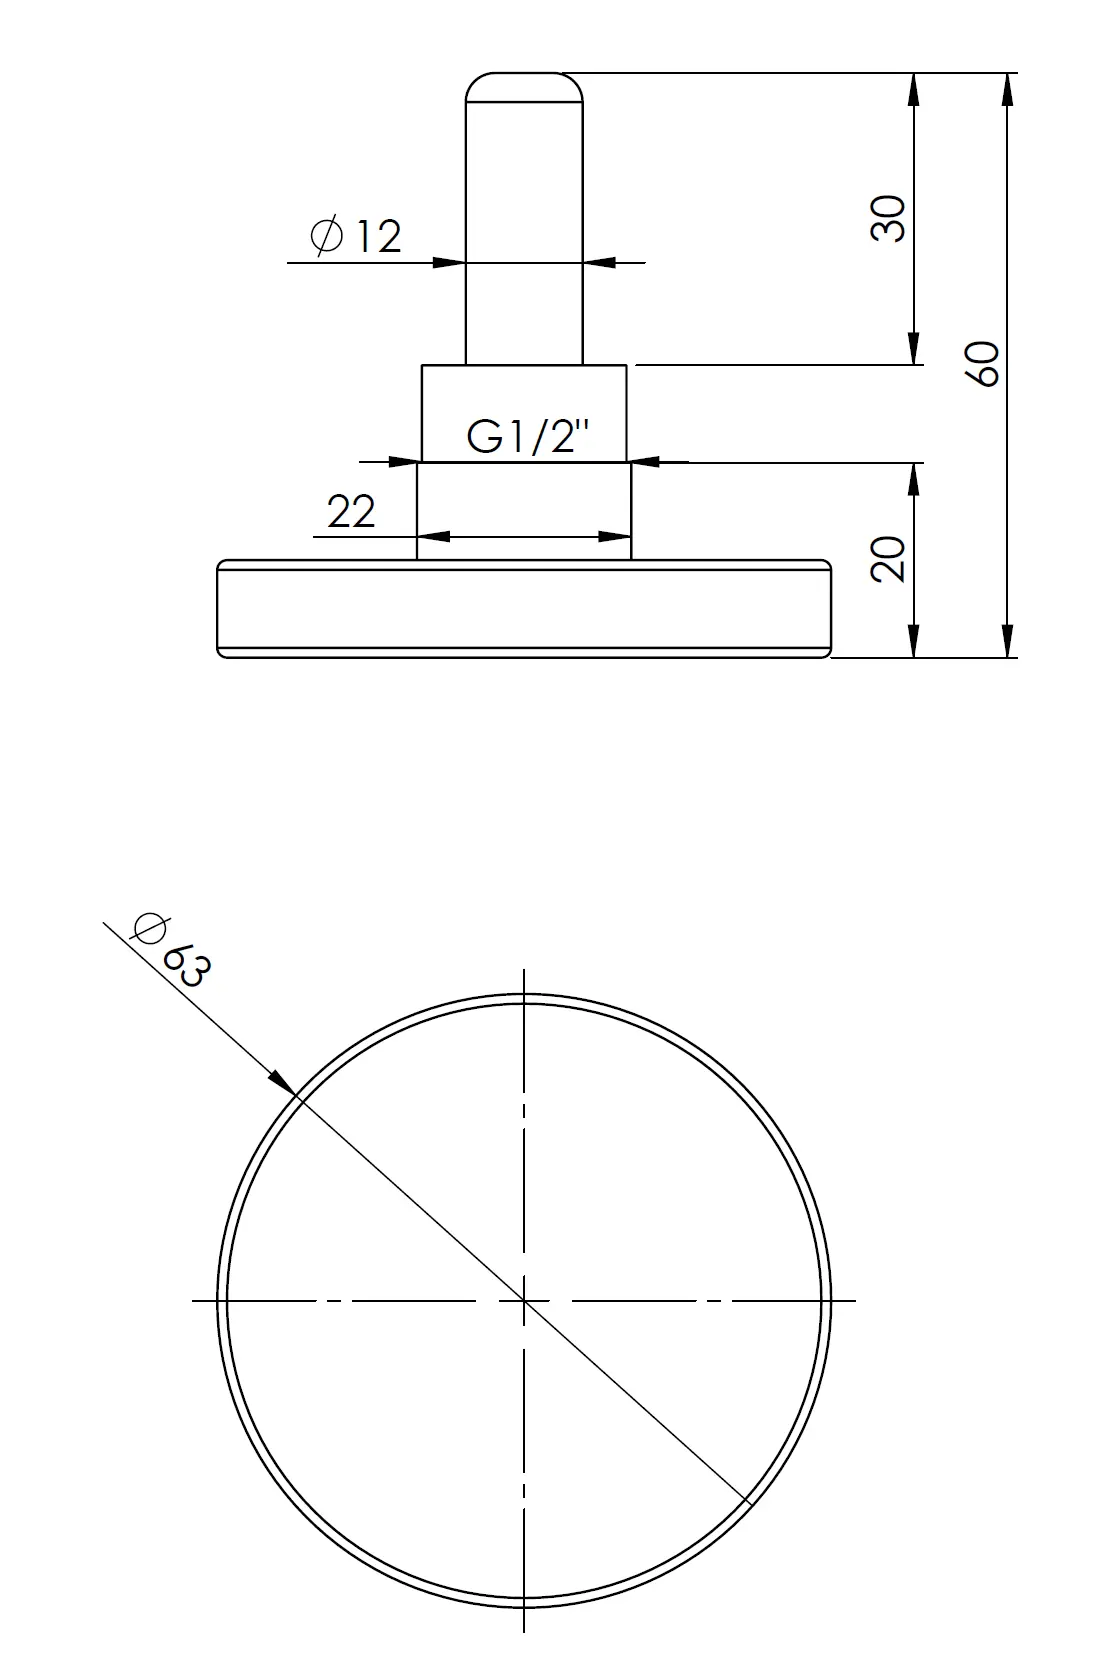 Termometr bimetaliczny BiTh 63, fi63 mm, 0÷120°C, L 40 mm, G1/2", ax, kl. 2 - budowa